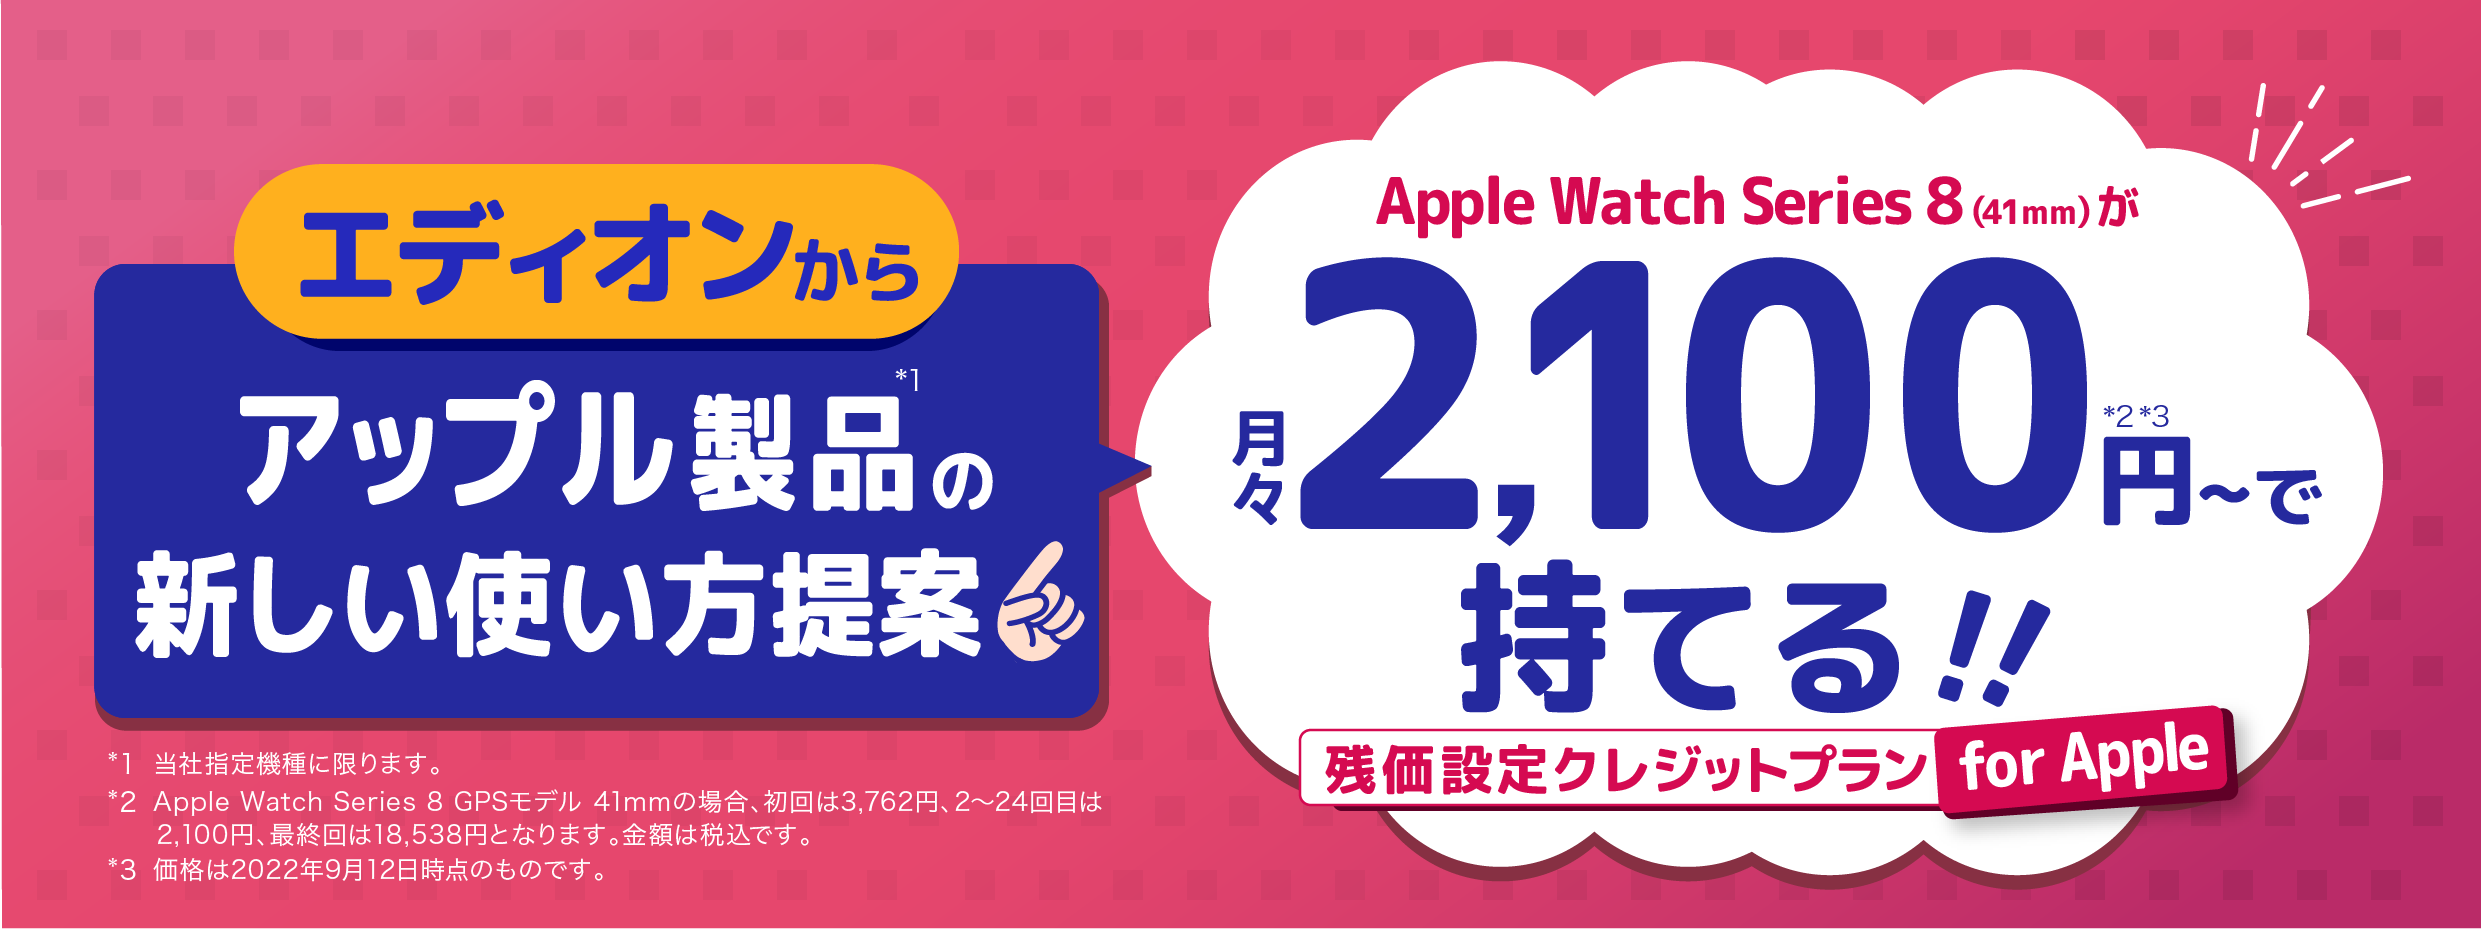 月々2100円でApple Watch Series 8 GPSモデル41mmが持てる